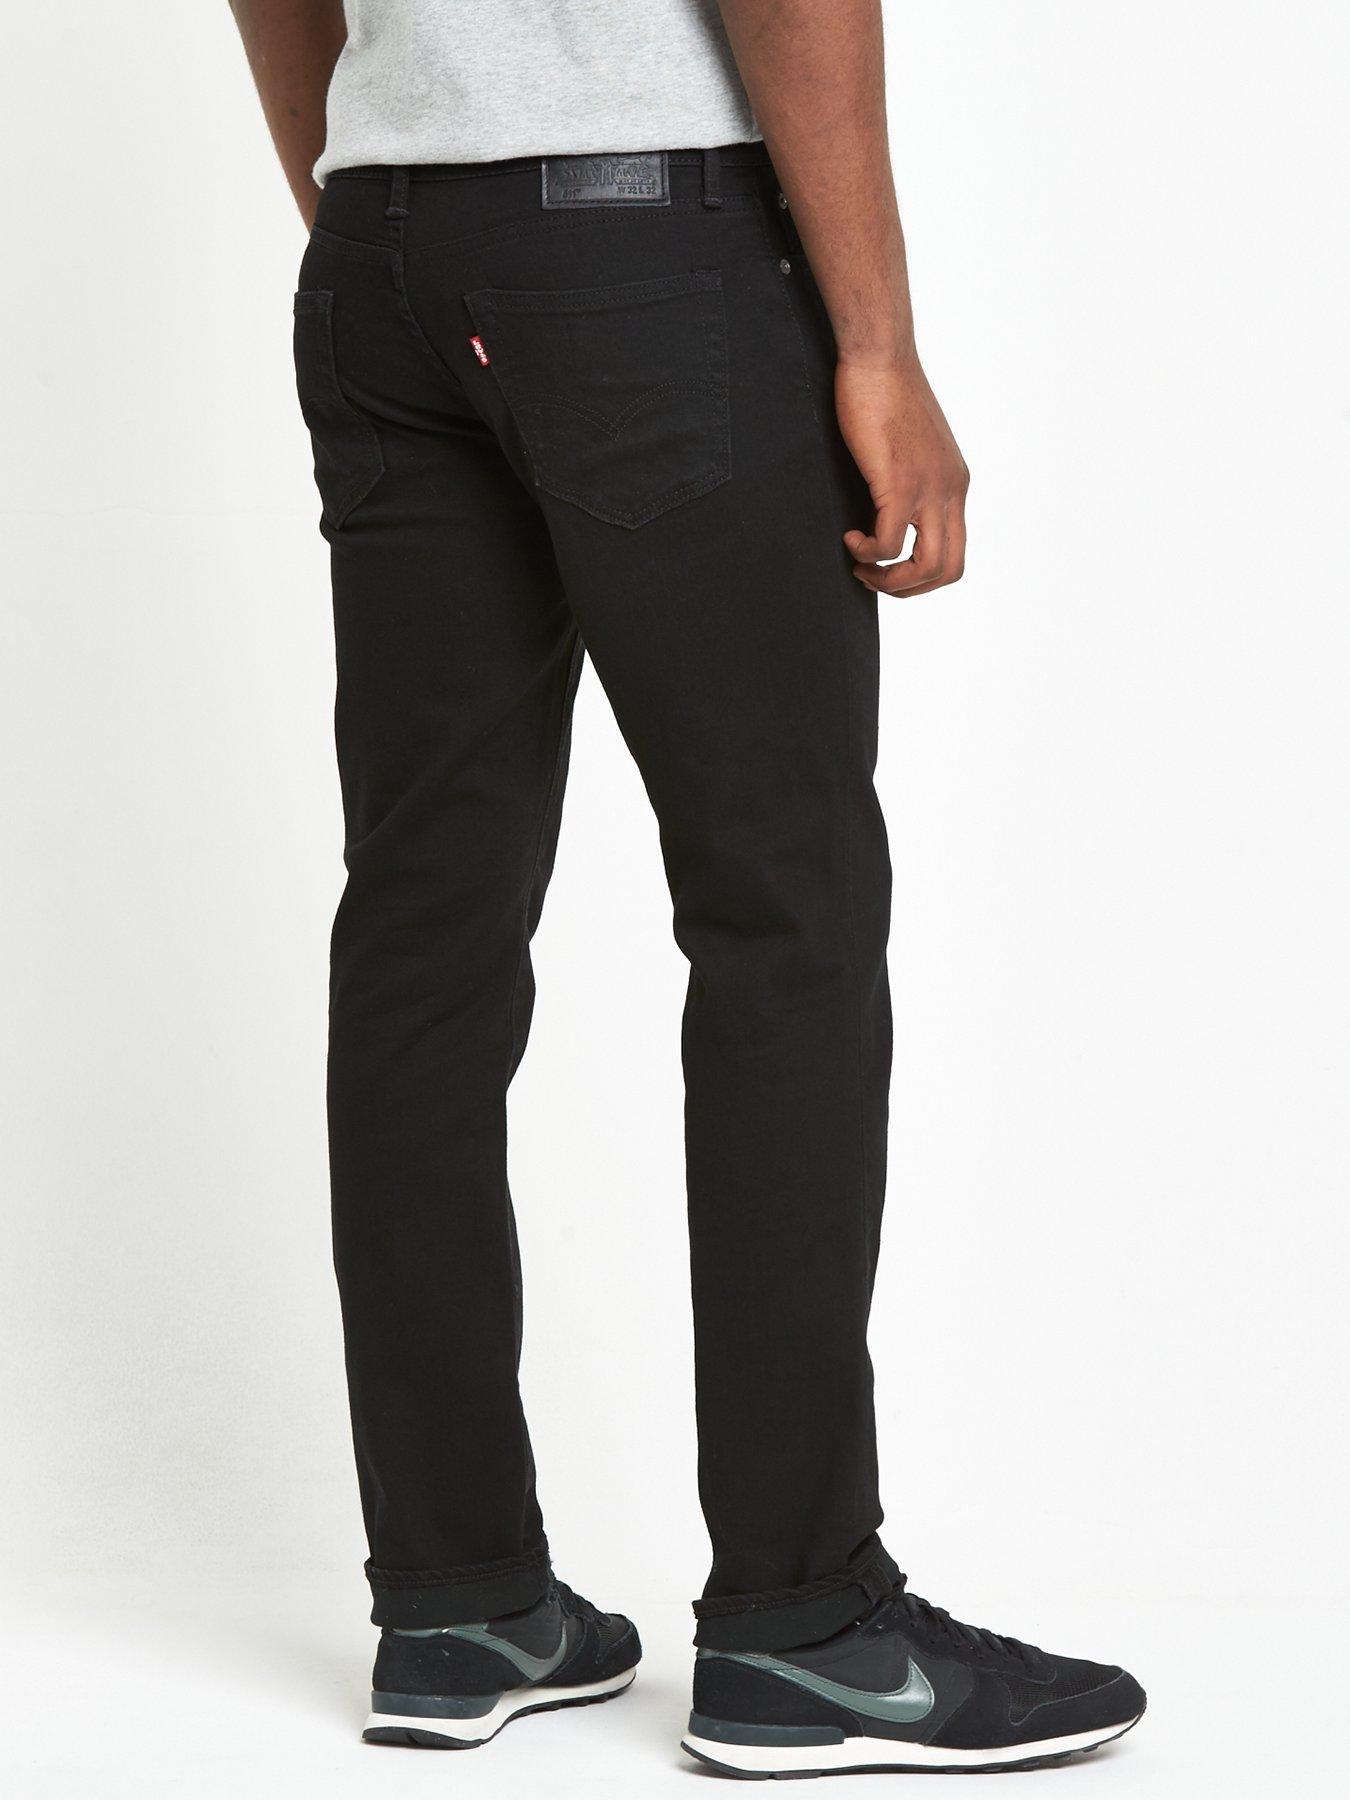 511 levis black jeans